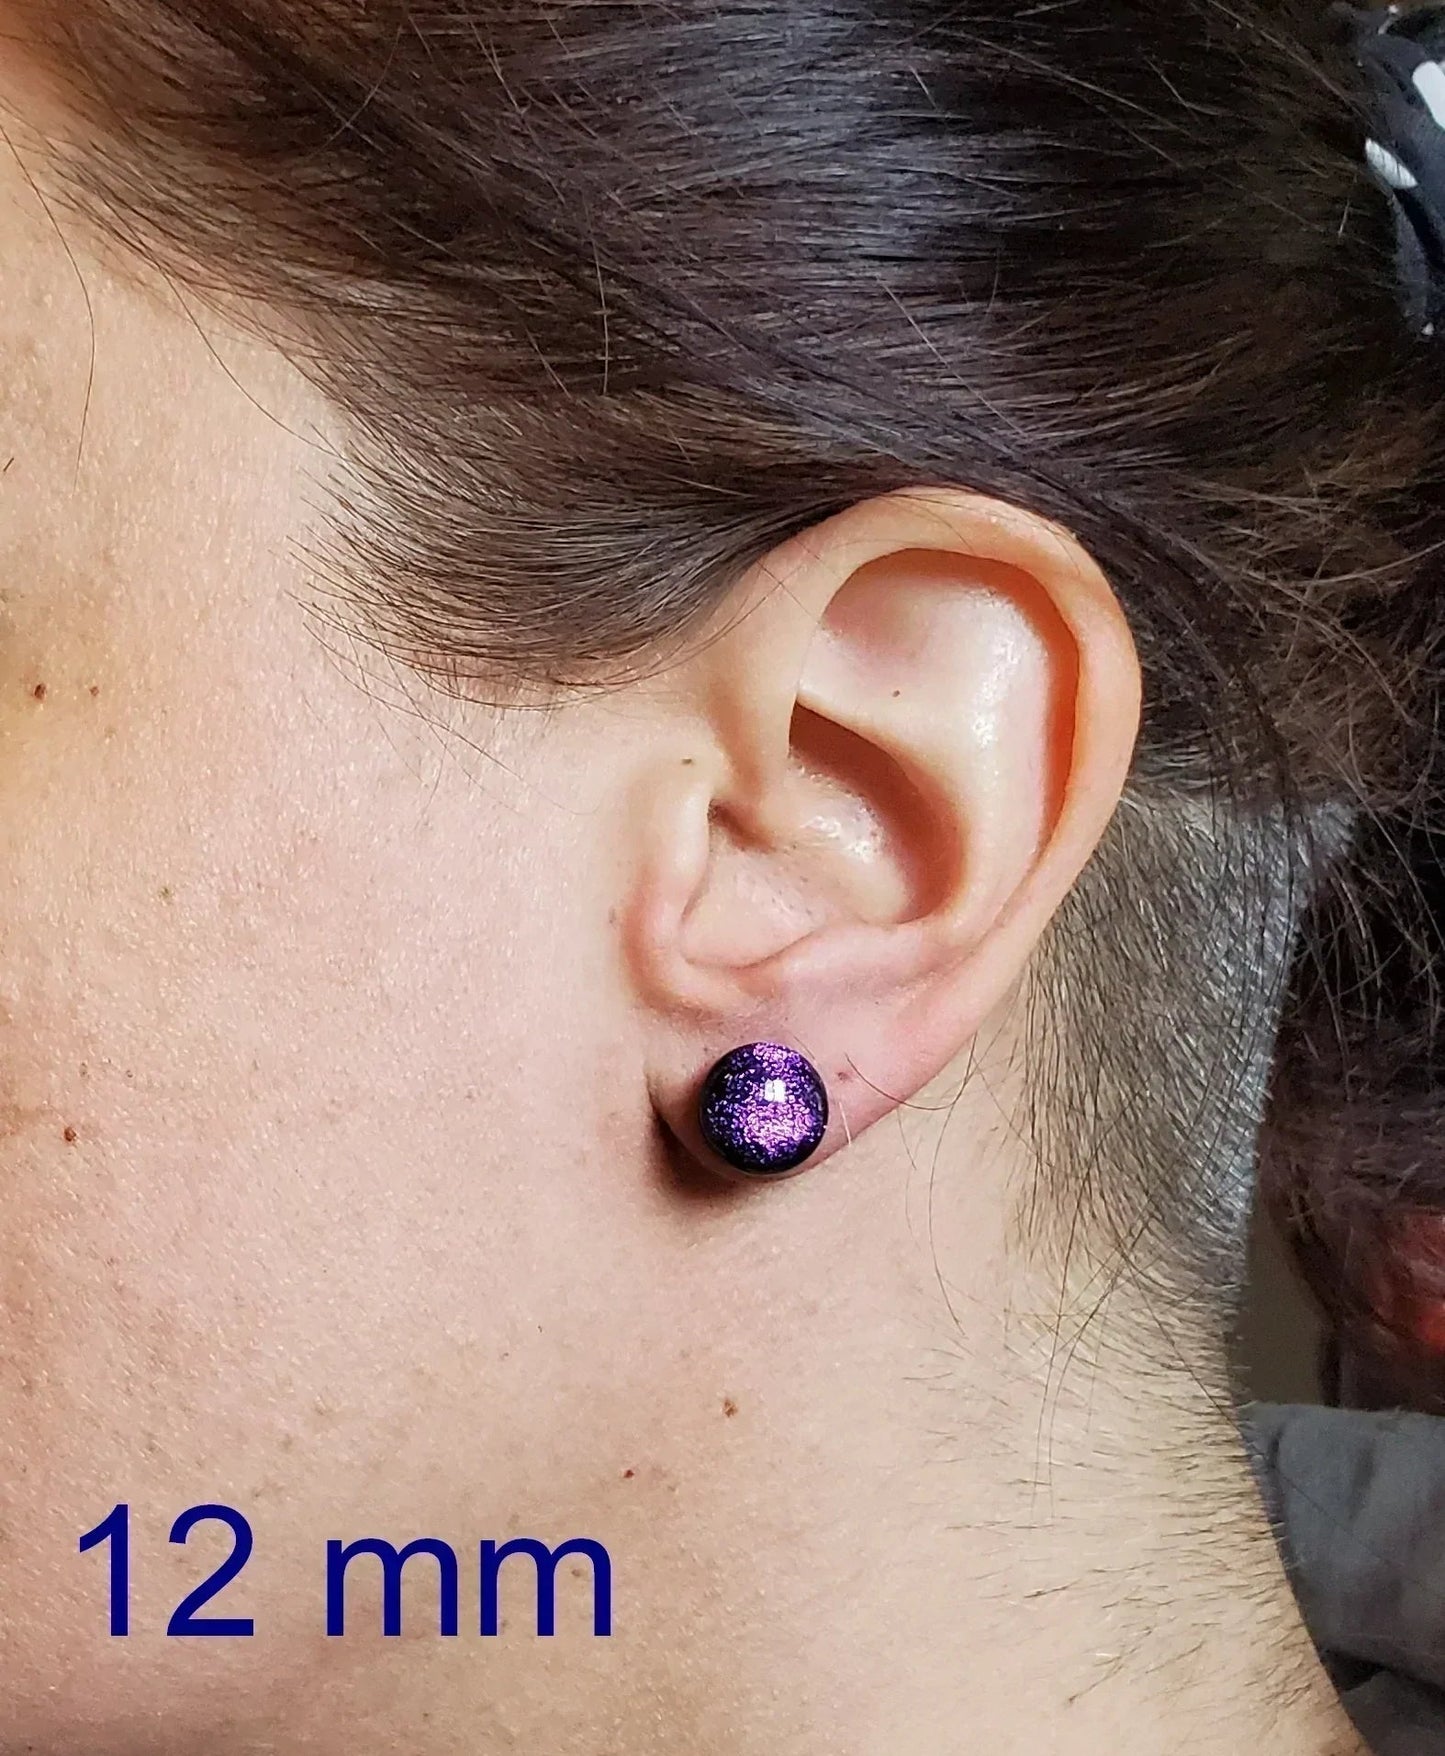 +/- 10 mm, Boucles d'oreilles dépareillées, verre fusion #75 - Bijoux Le fil d'Ariane